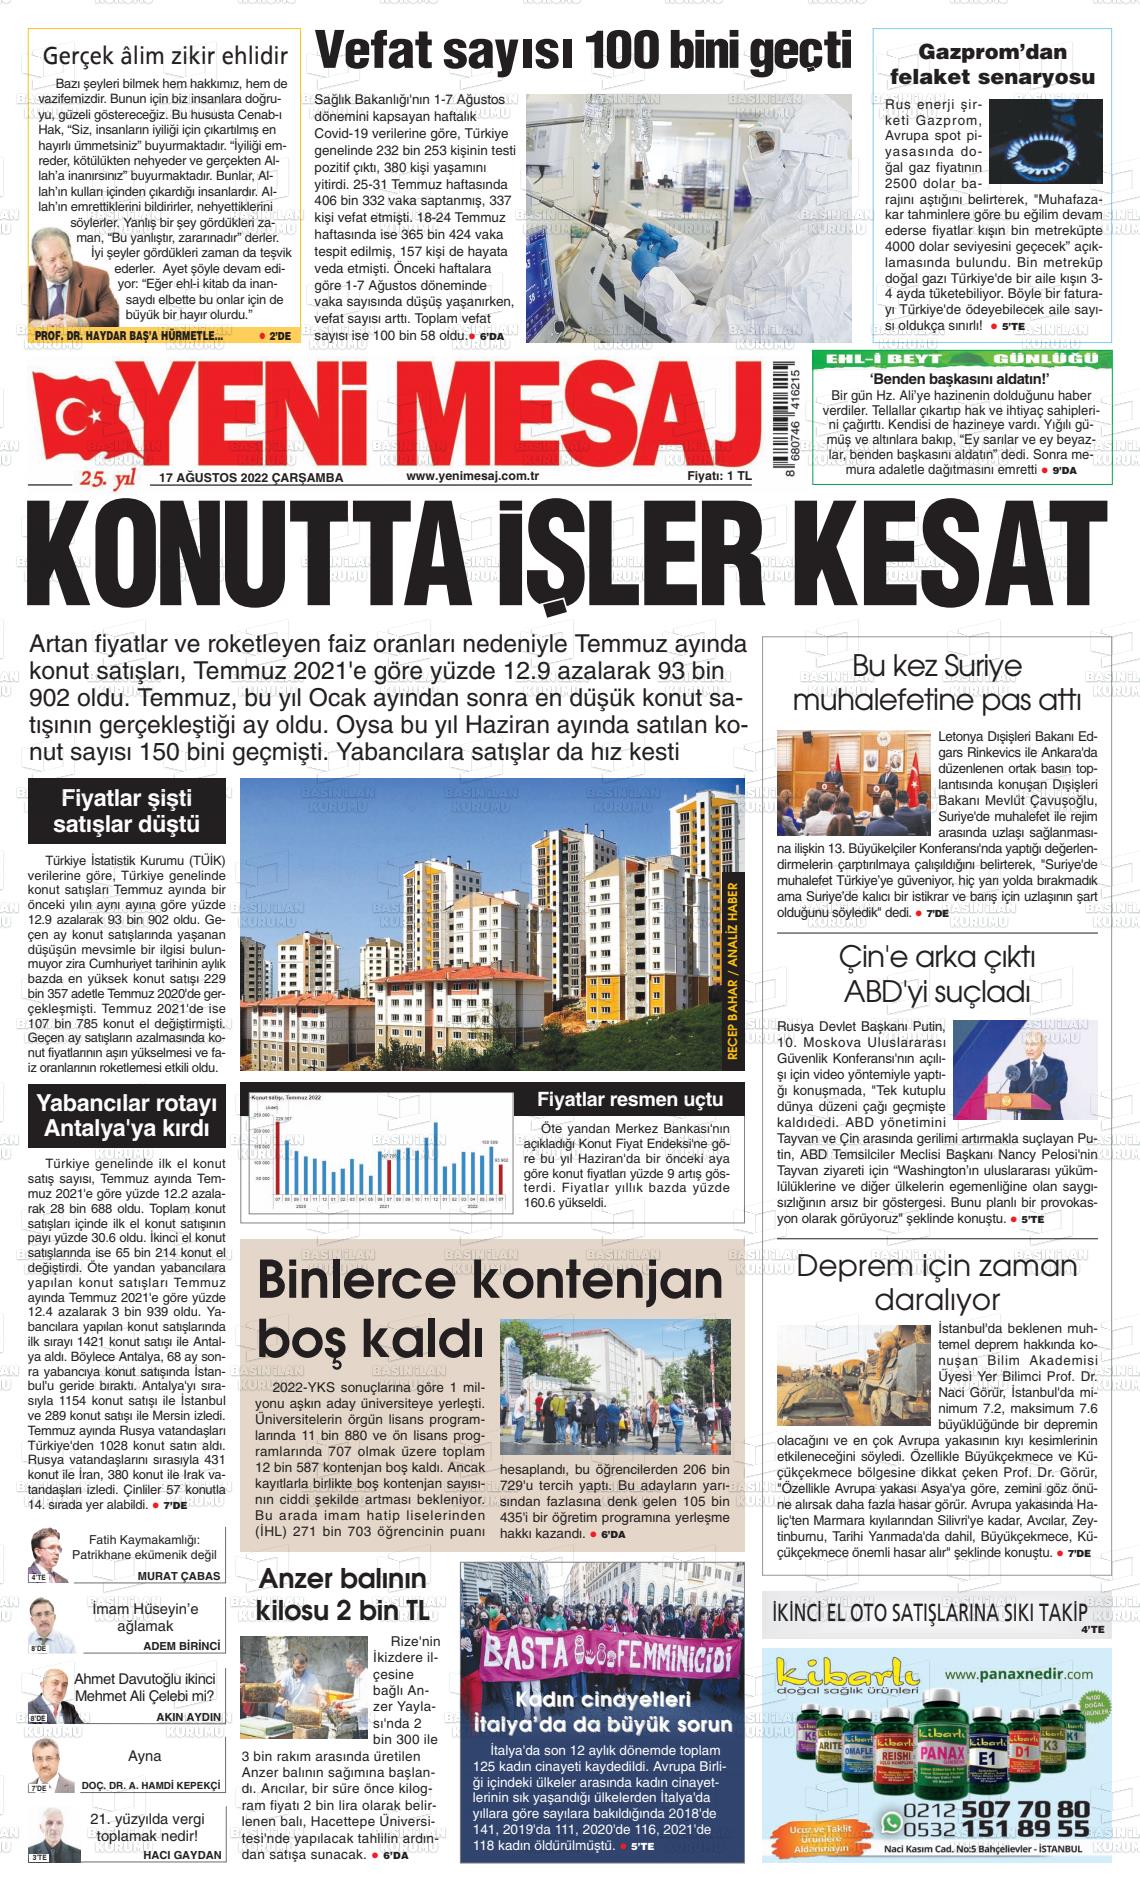 17 Ağustos 2022 Yeni Mesaj Gazete Manşeti